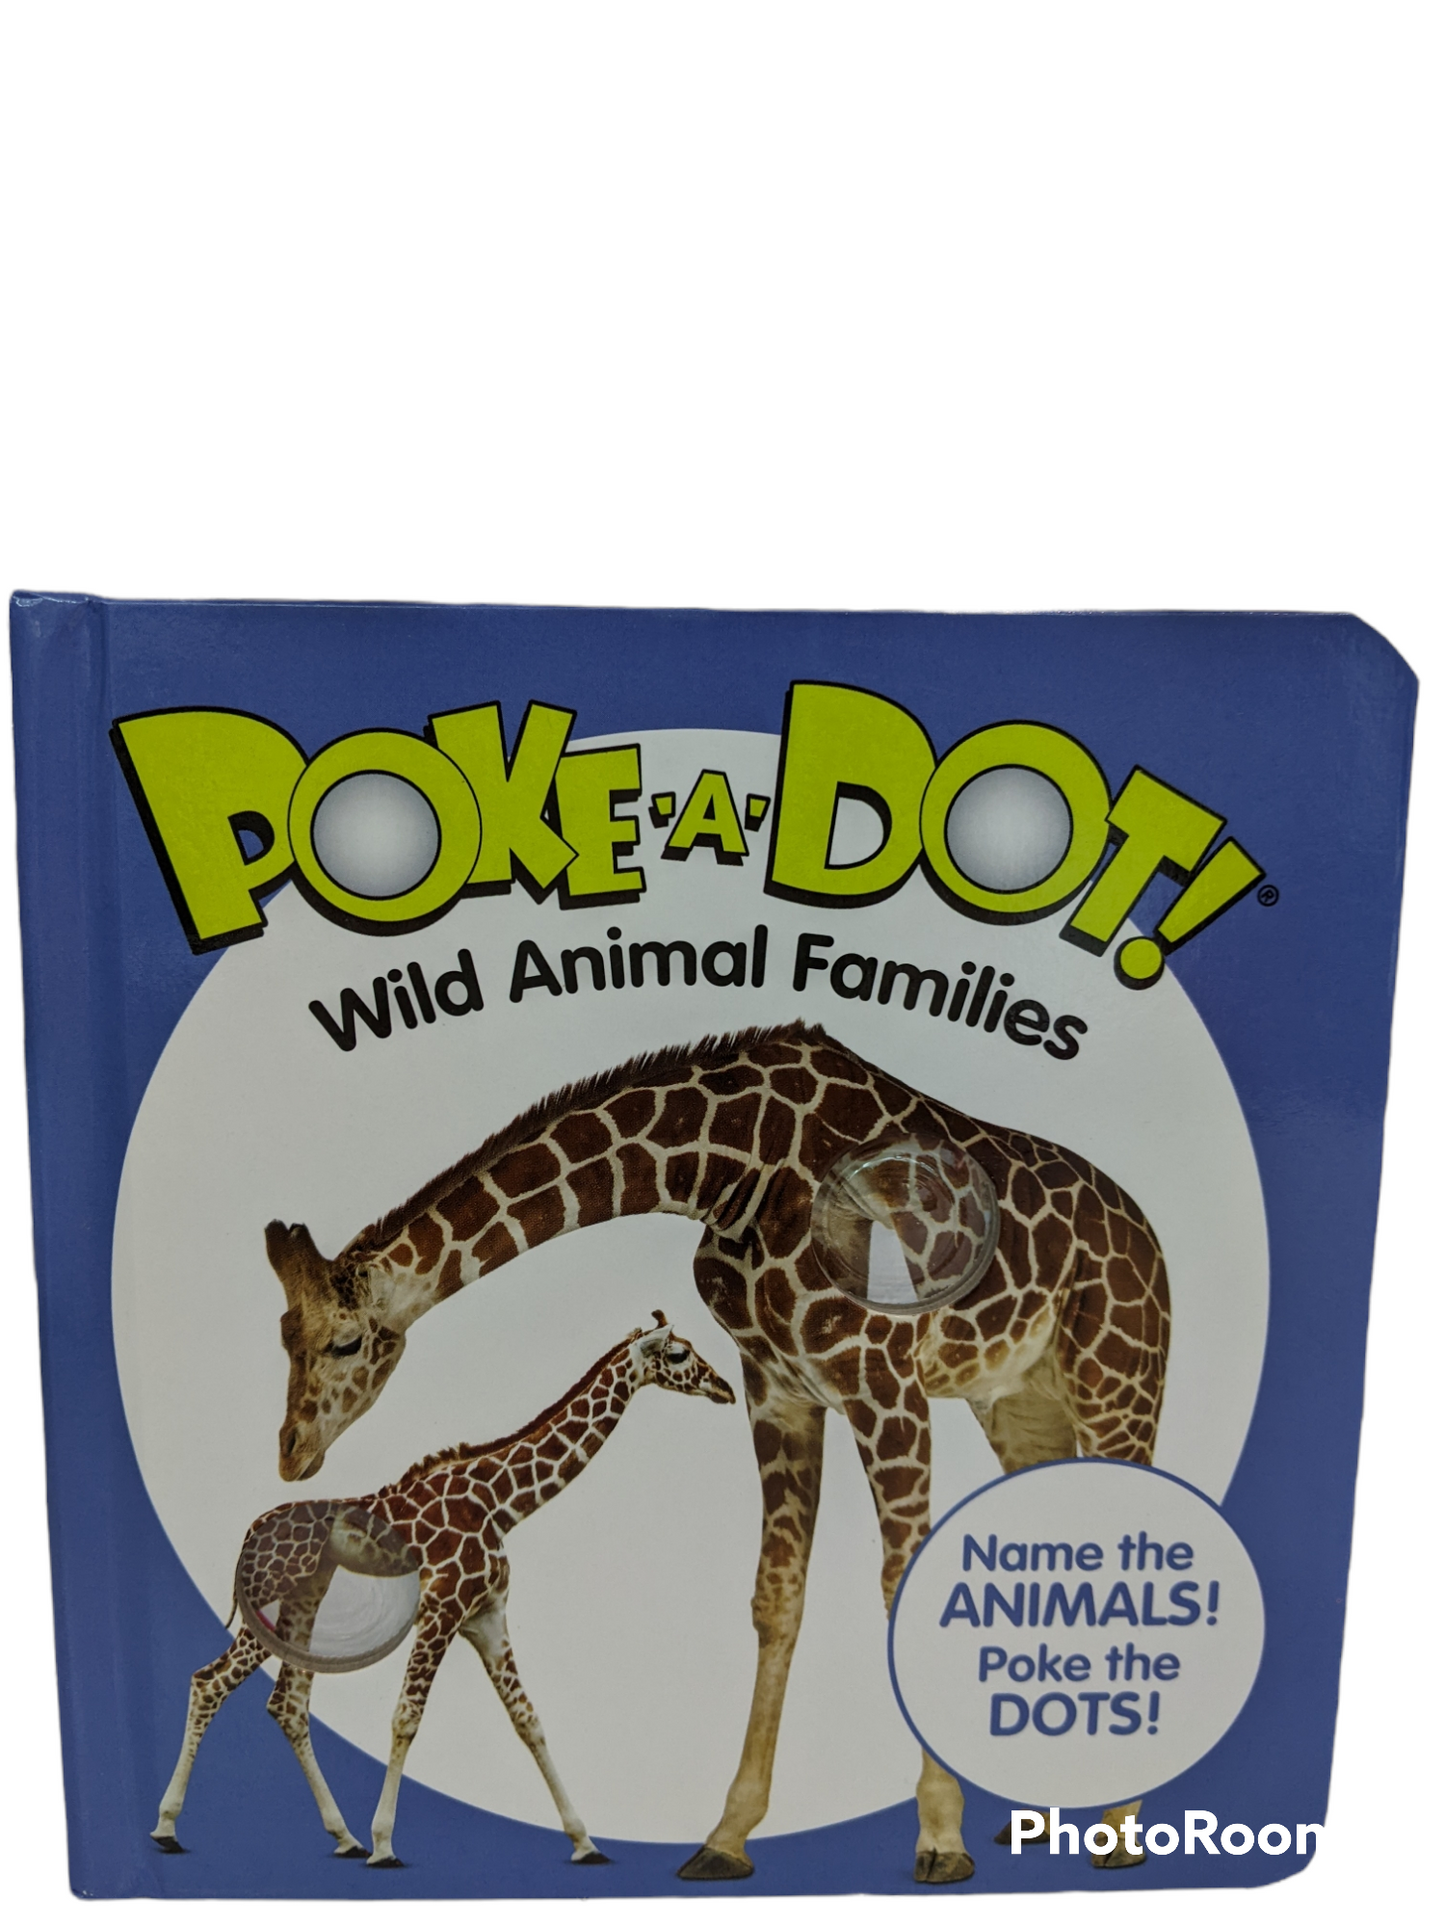 Poke-A-Dot Wild Animal Families